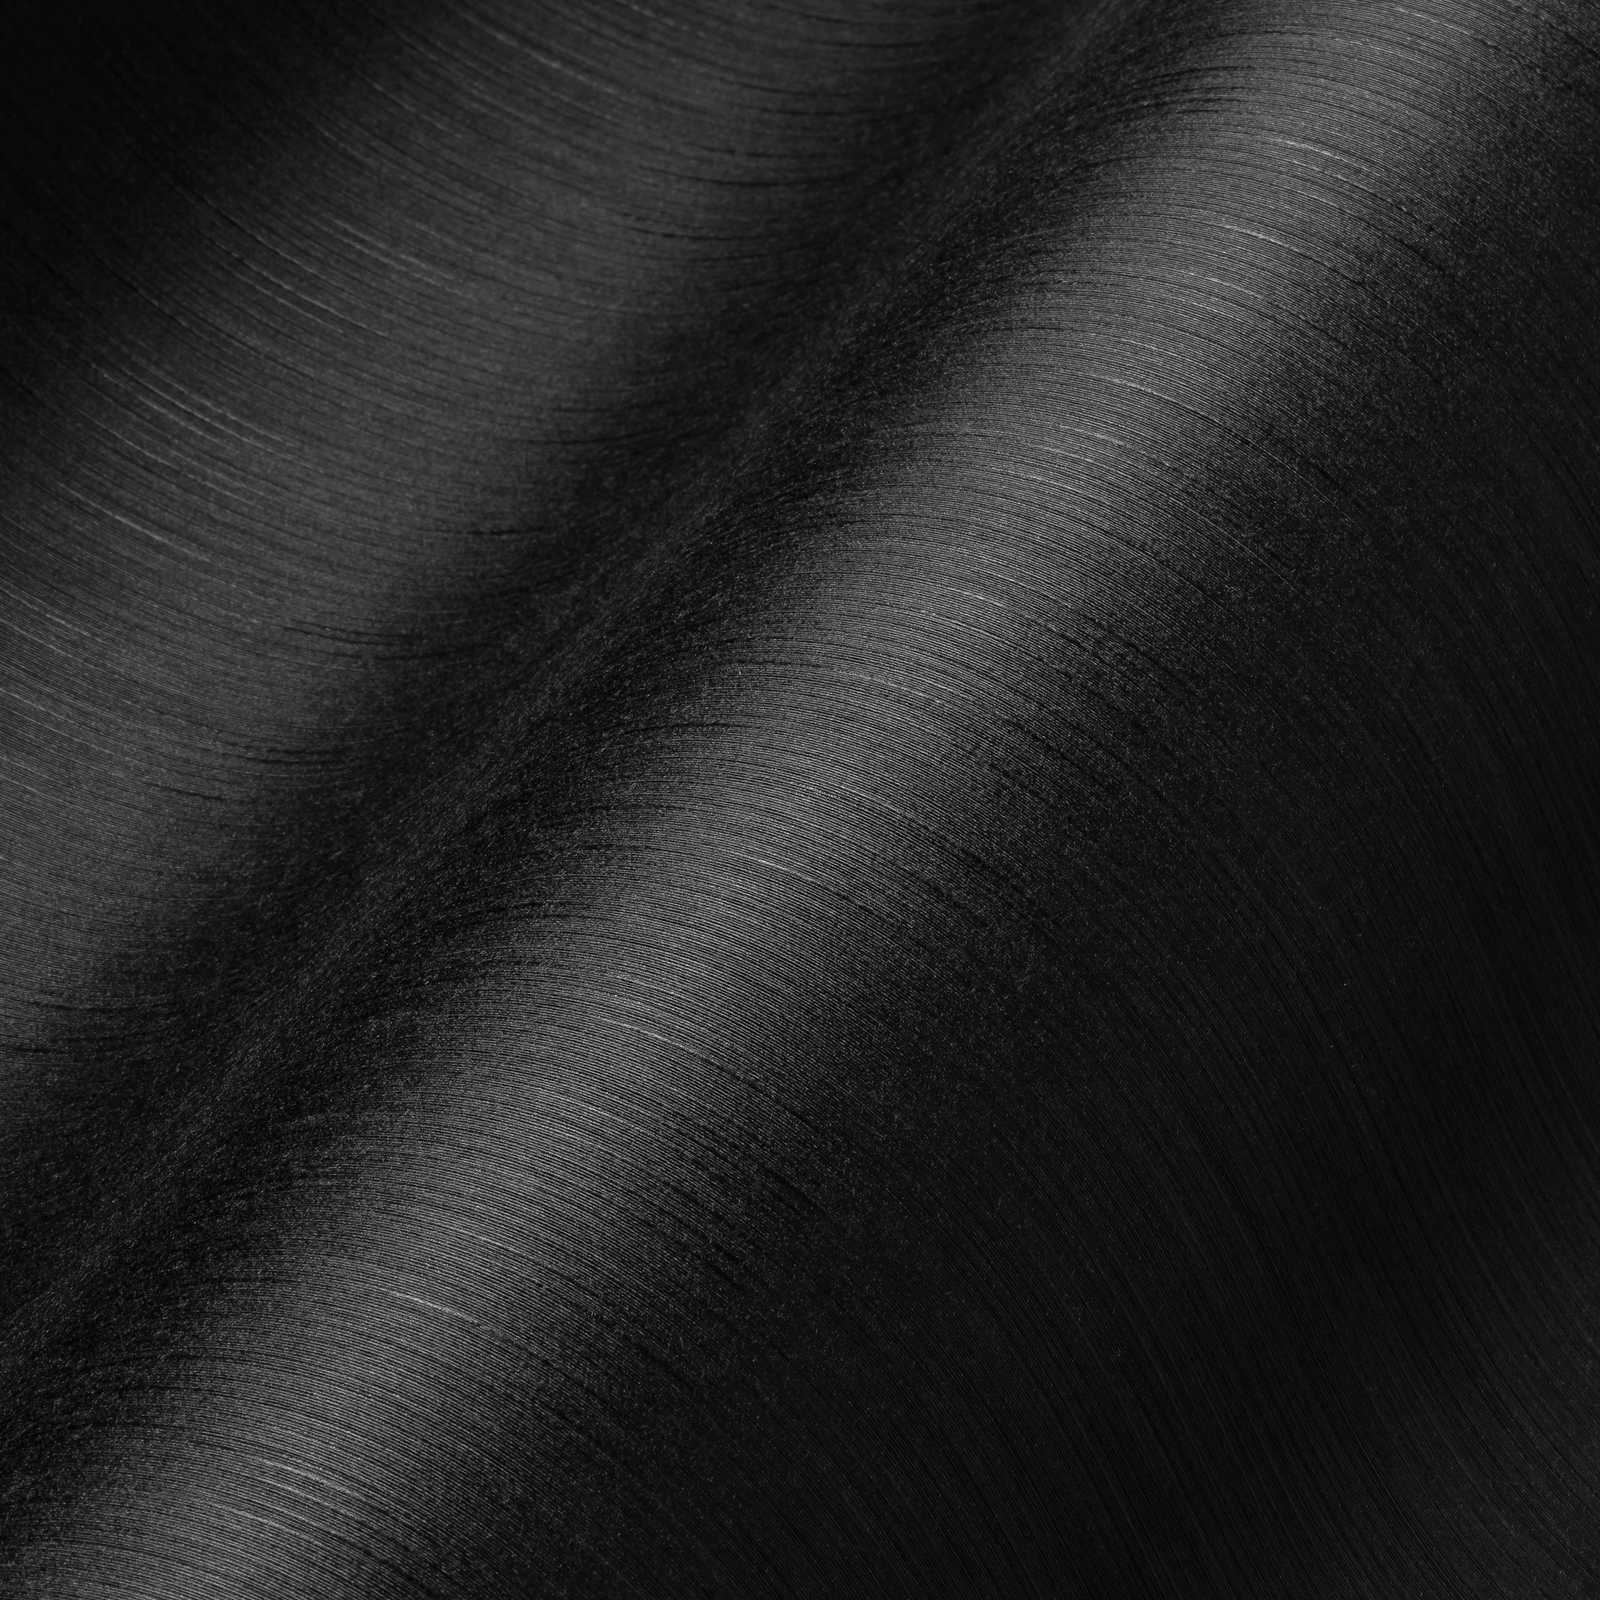             Papier peint intissé noir avec effet texturé chiné
        